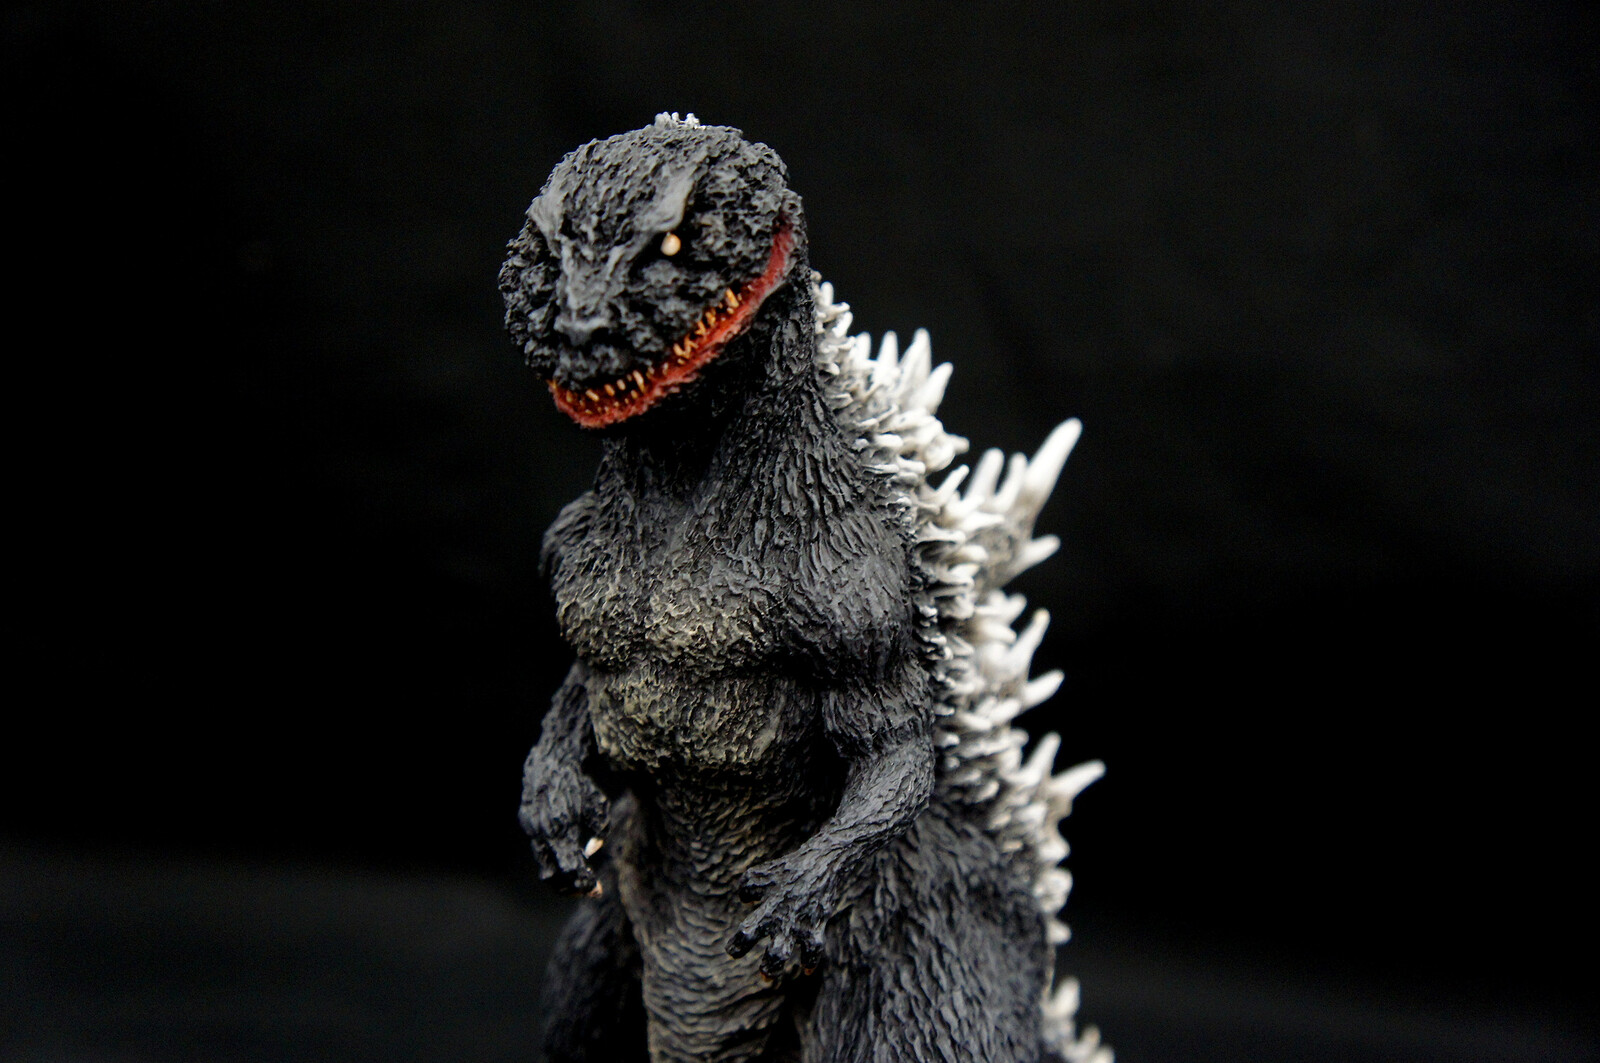 mage Version 1954 Godzilla Art Statue イメージ 初代ゴジラ